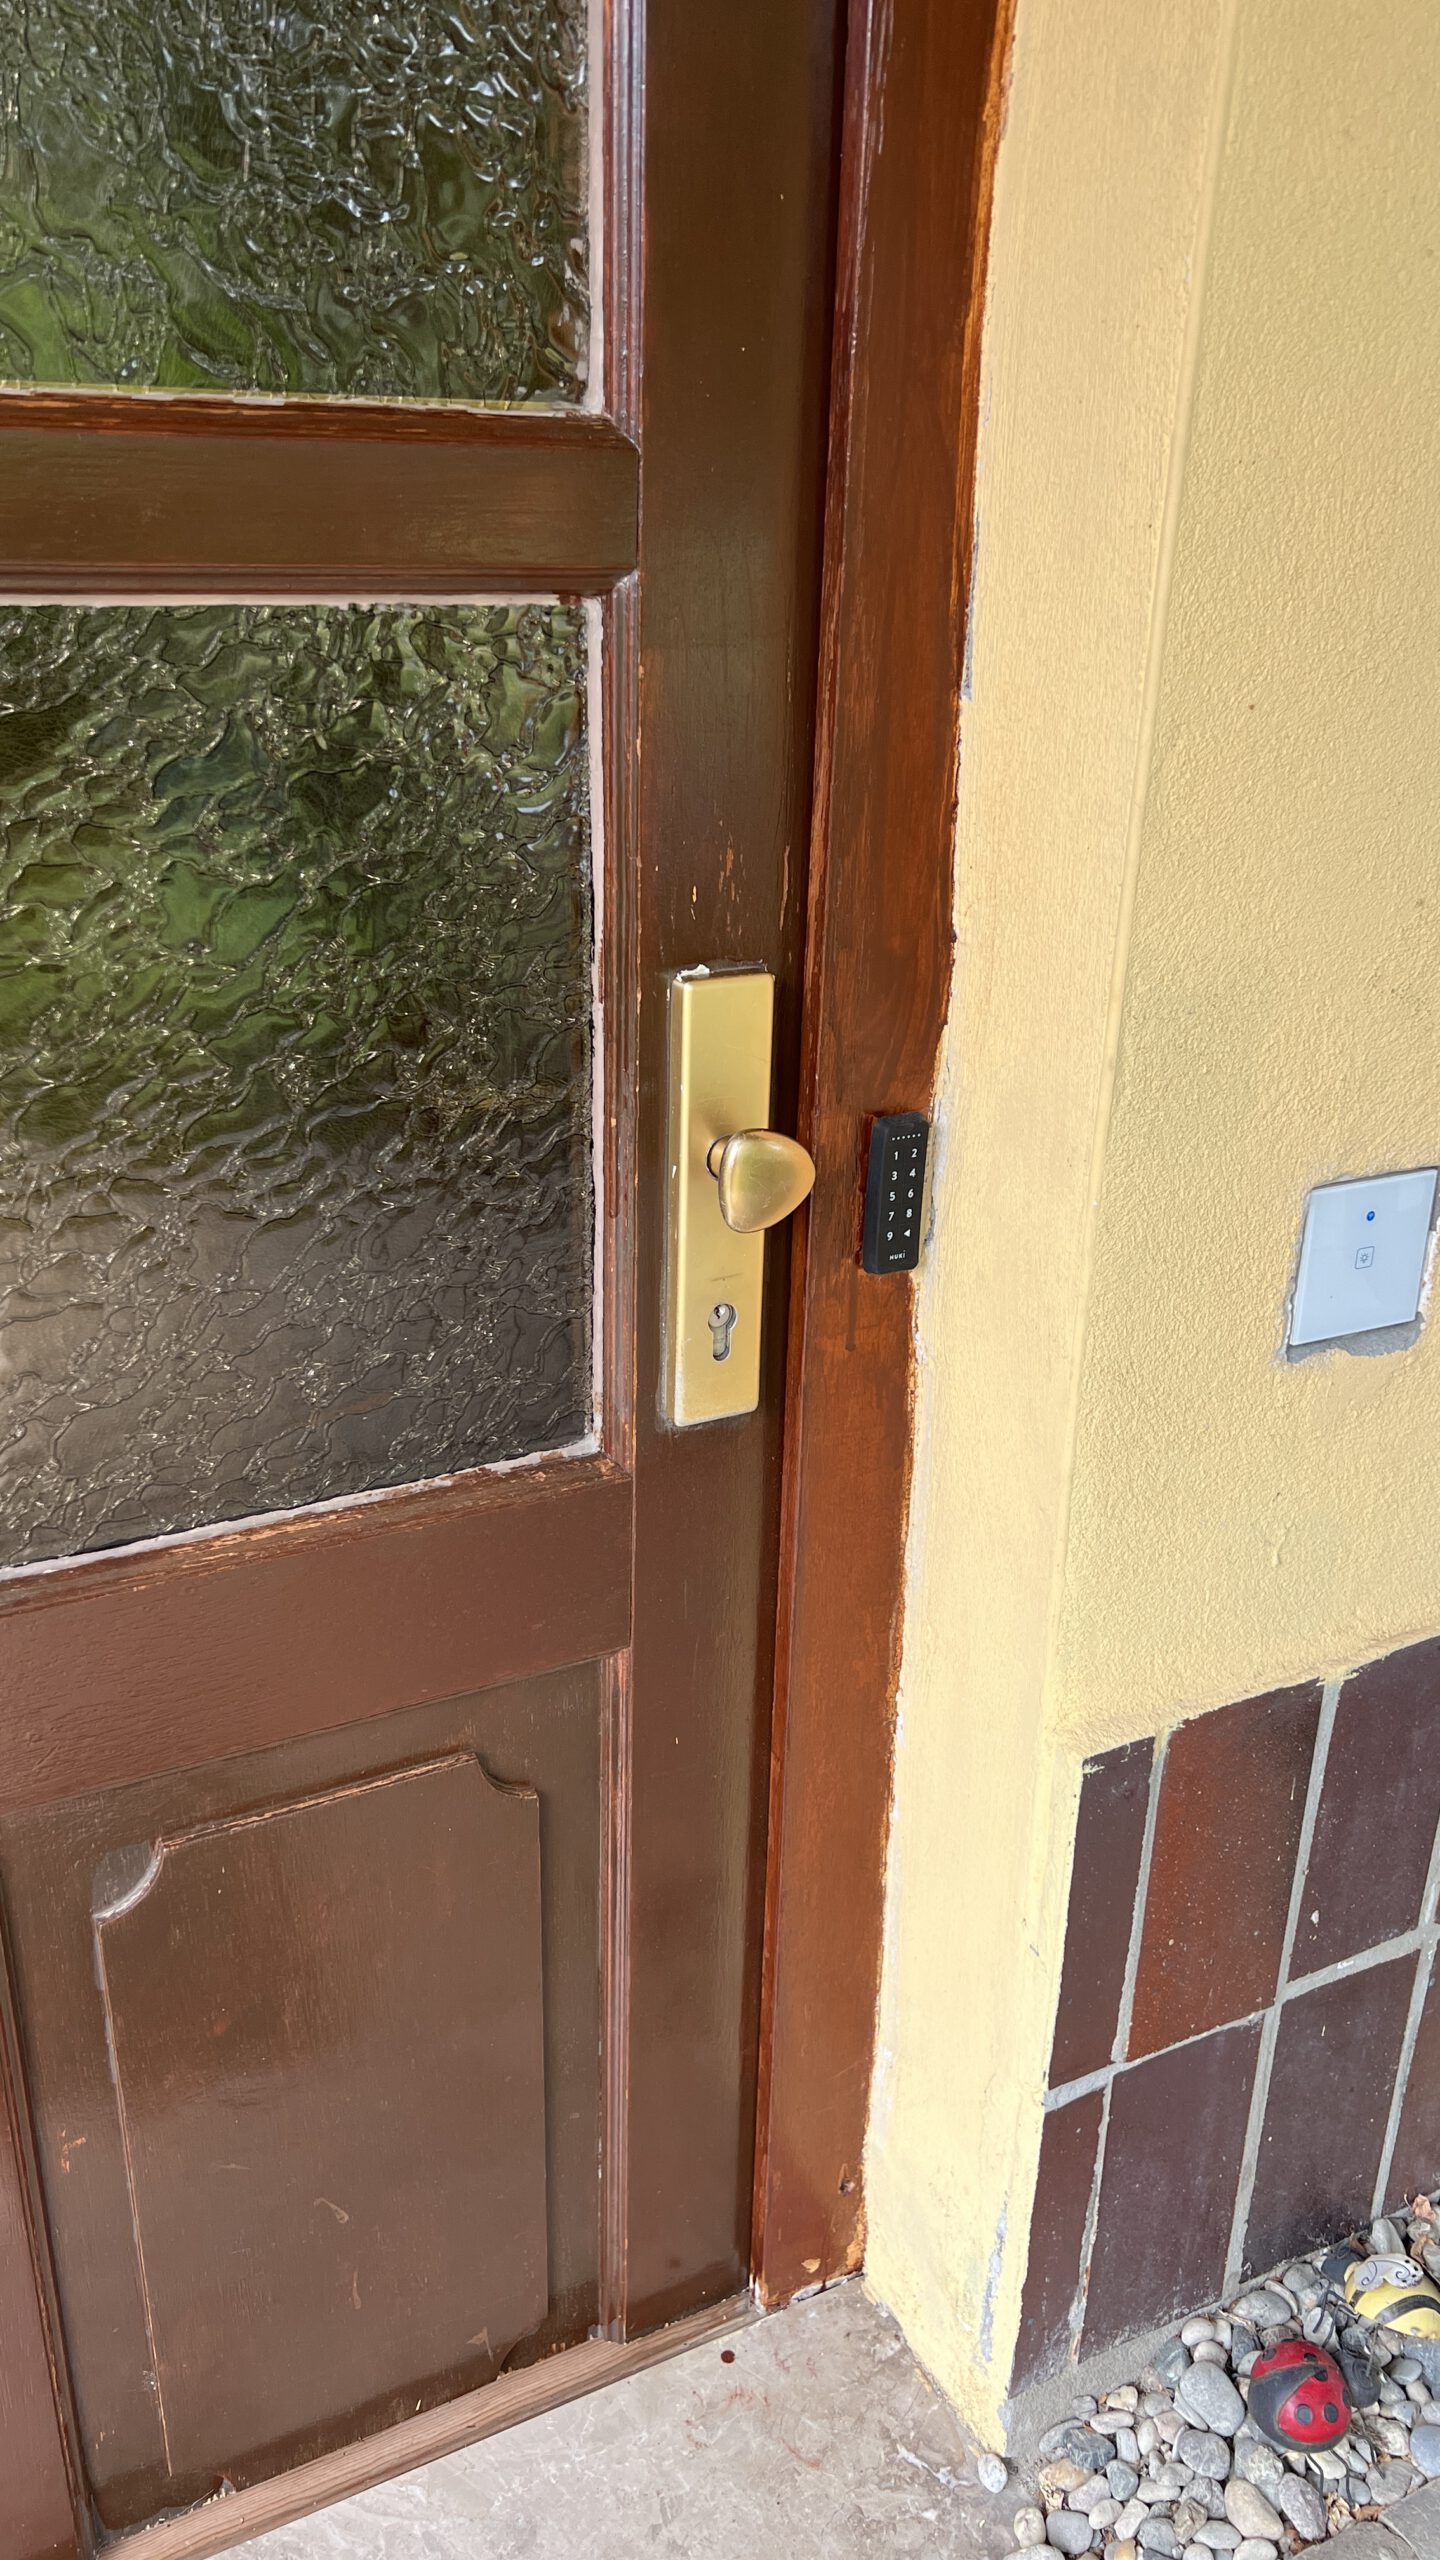 "Nuki Keypad: Einfacher und sicherer Zugang" "Ferienwohnung: Anweisungen zur Nutzung des Nuki Keypads. Mit einem einen Tag vorher zugesandten sechsstelligen Code Zutritt erhalten. Die Schlüssel befinden sich im Inneren der Wohnung."